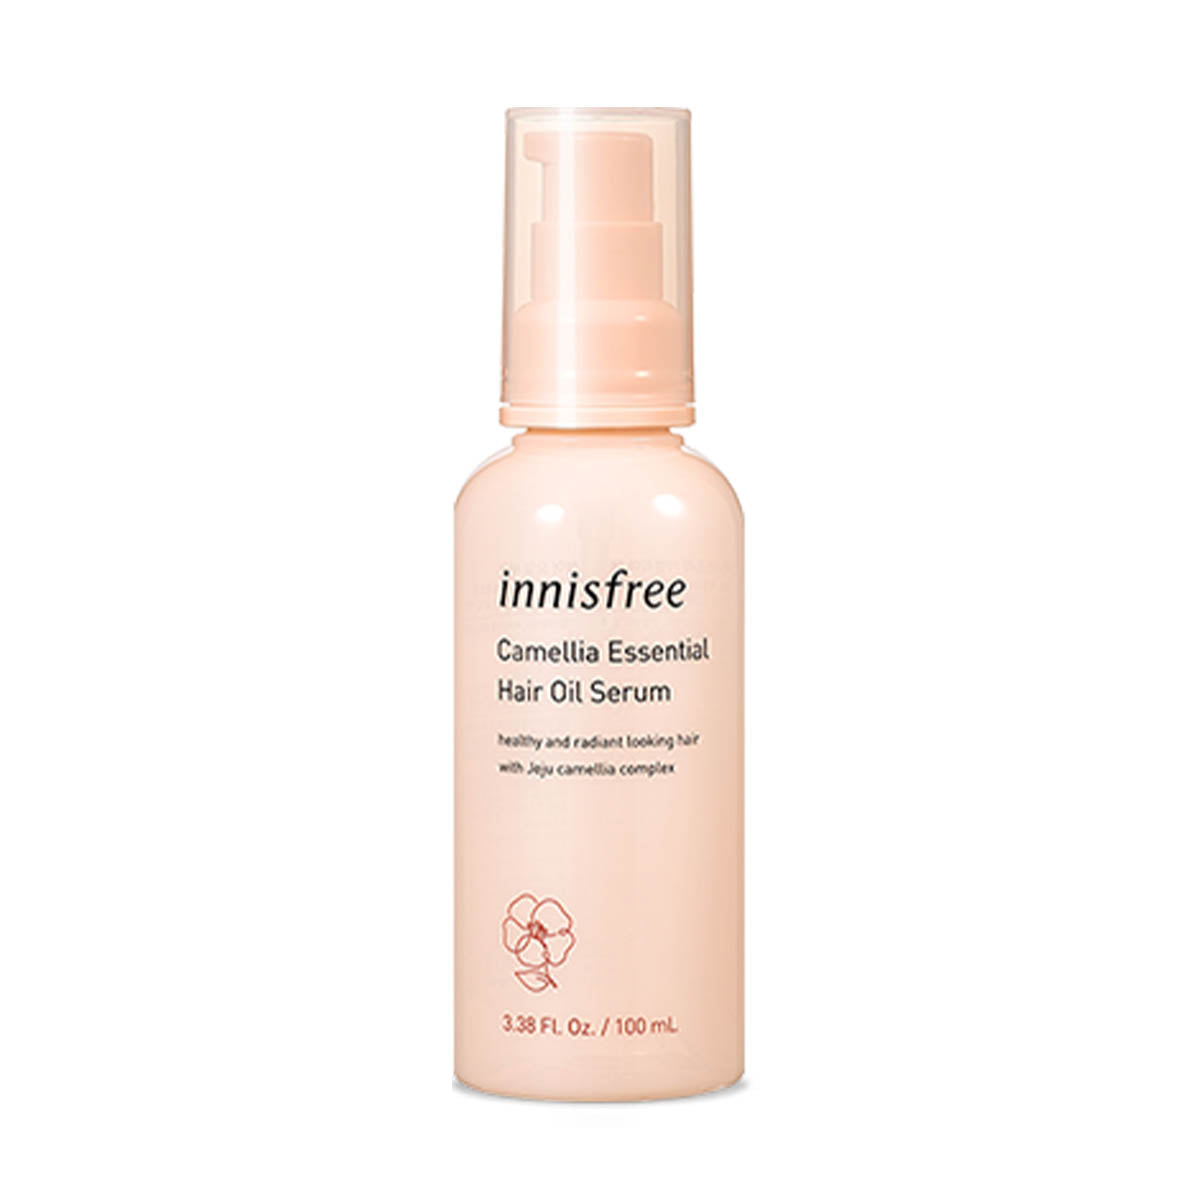 INNISFREE - Camellia Essential Hair Oil Serum